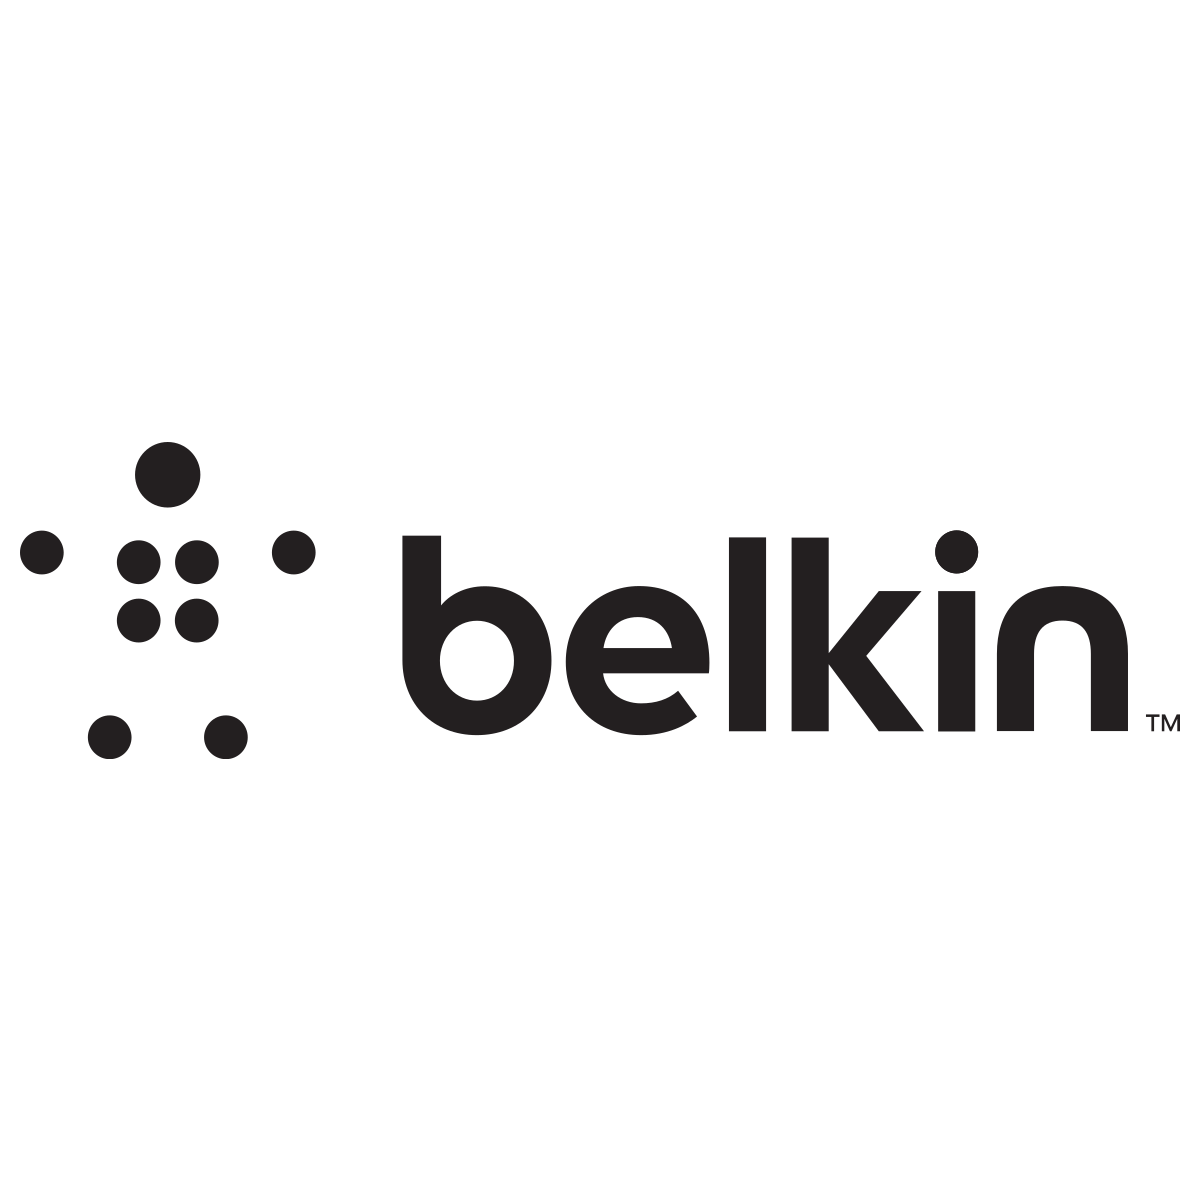 BELKIN INTERNATIONAL INC